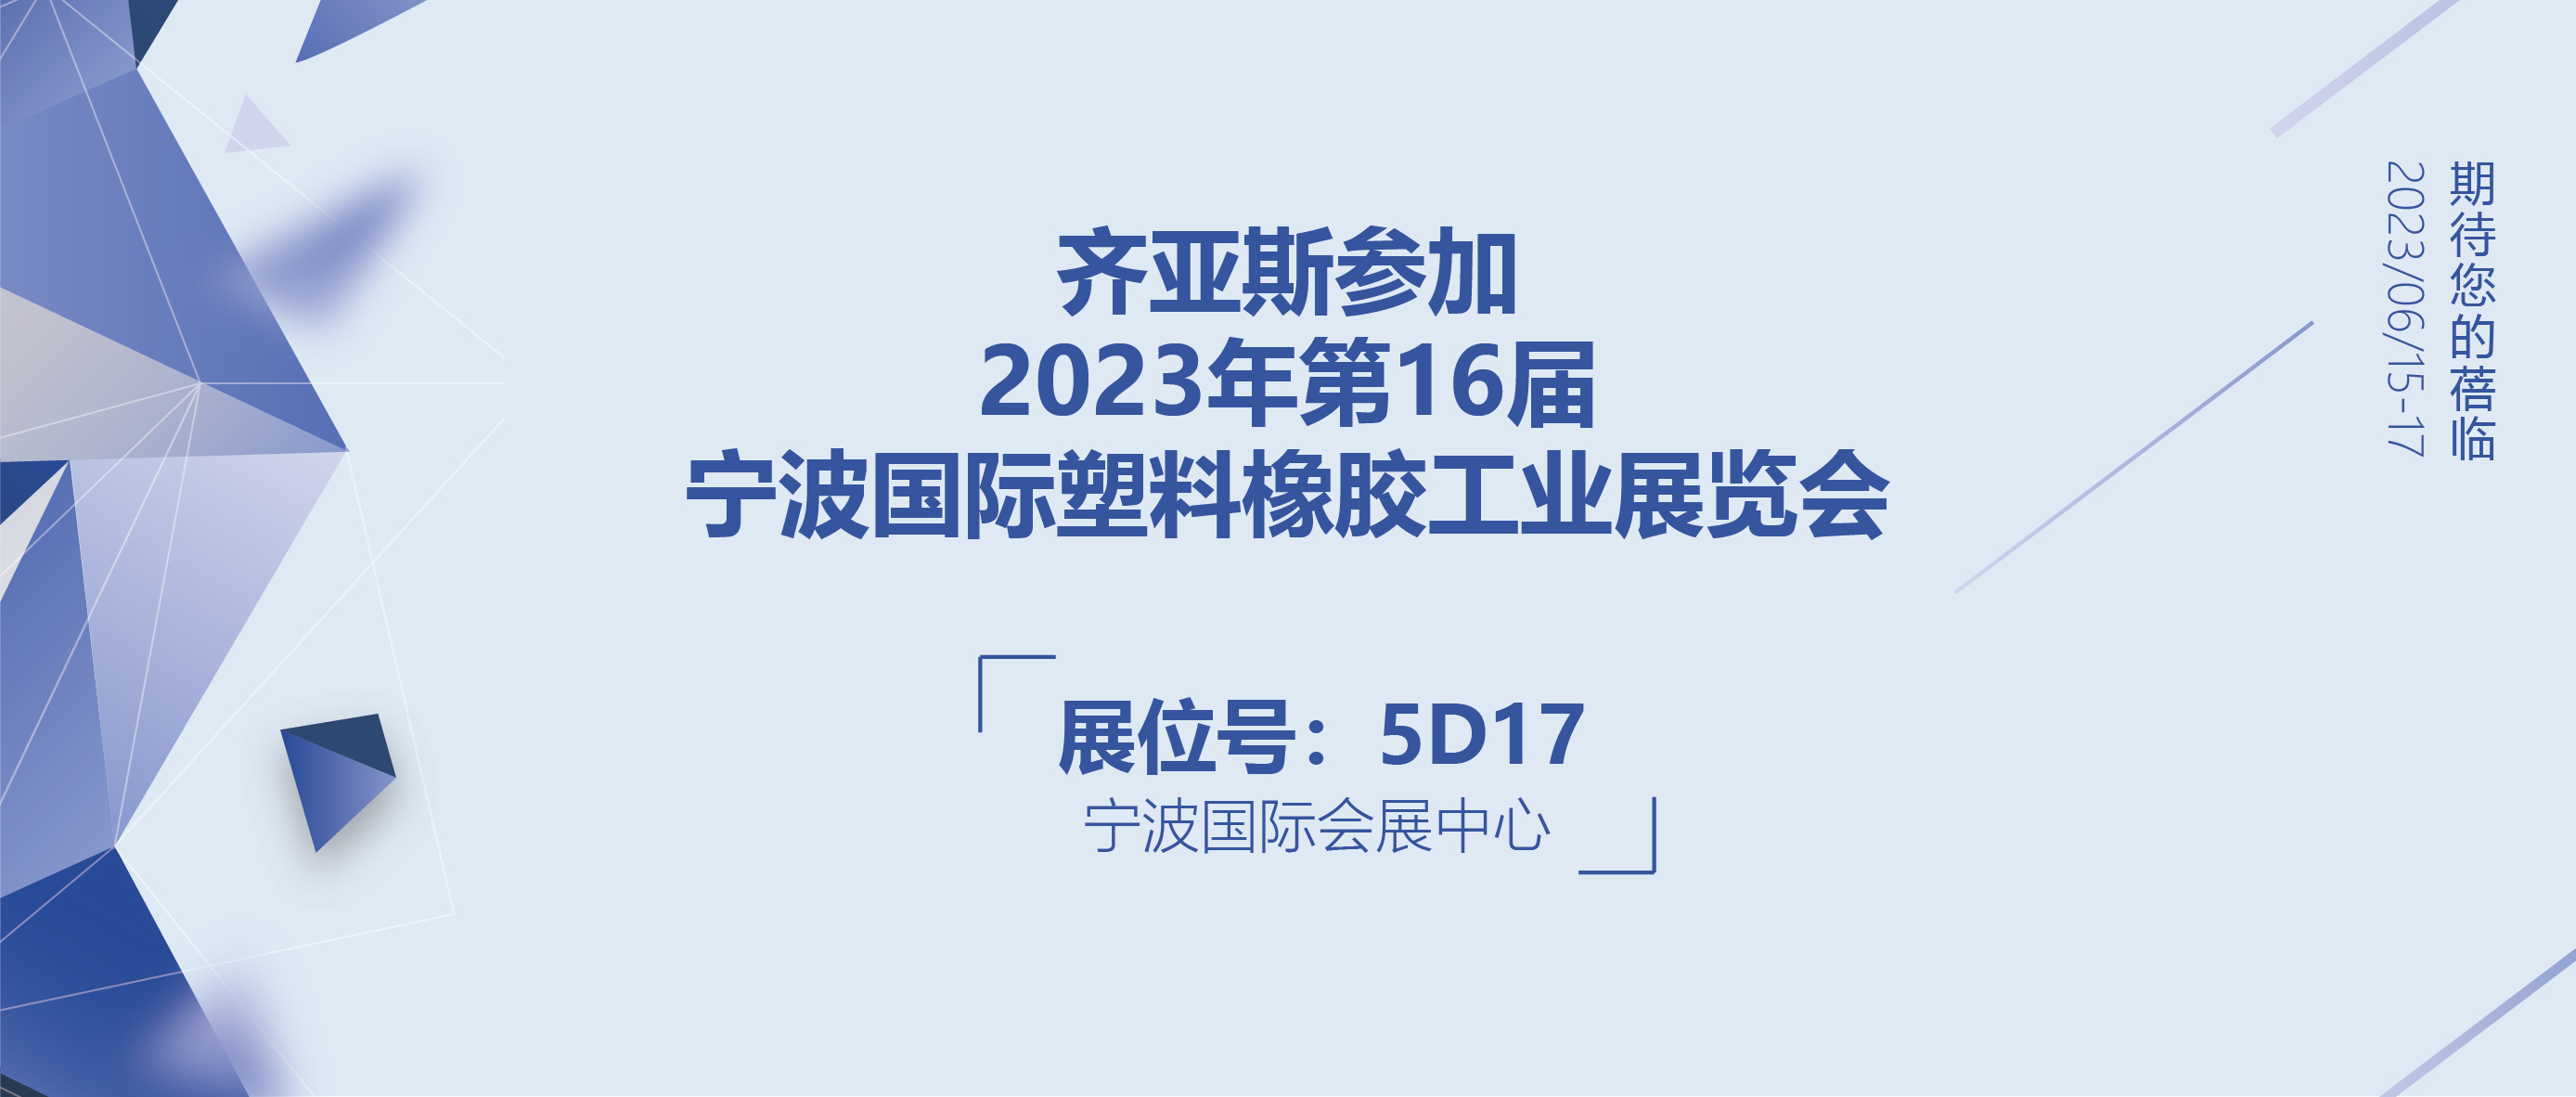 Ziasiot|齐亚斯参加2023第16届宁波国际塑料橡胶工业展览会